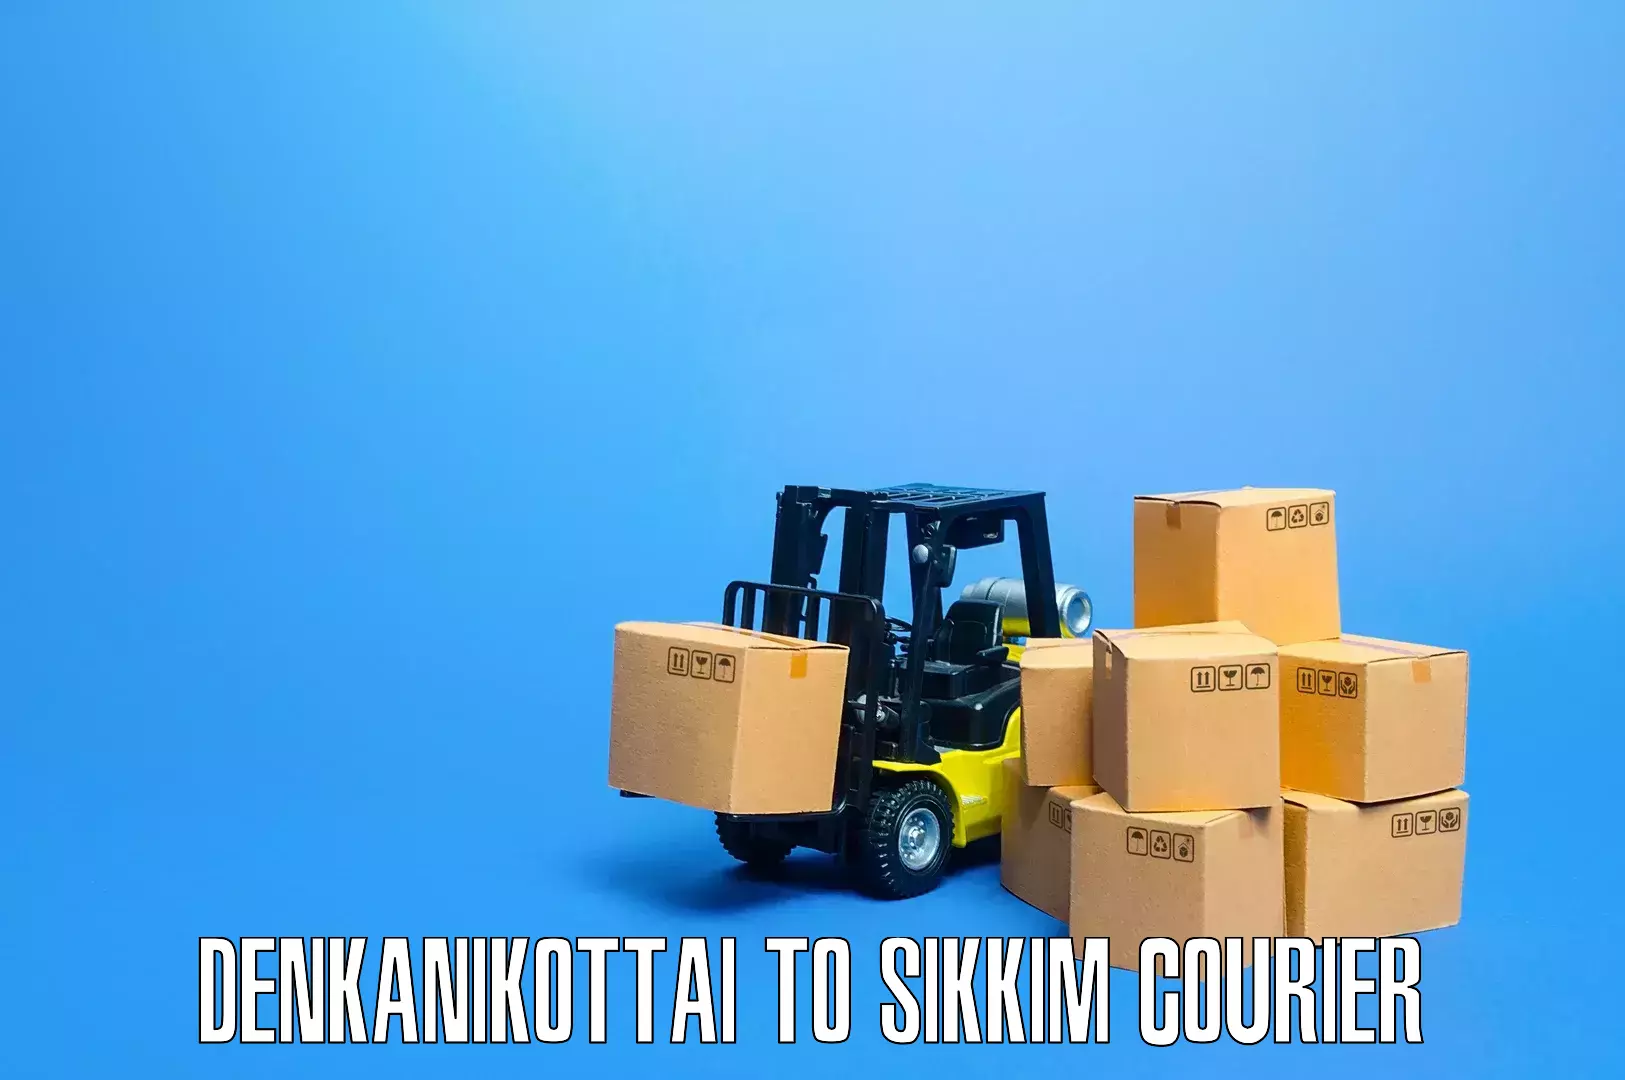 Advanced household movers Denkanikottai to Sikkim